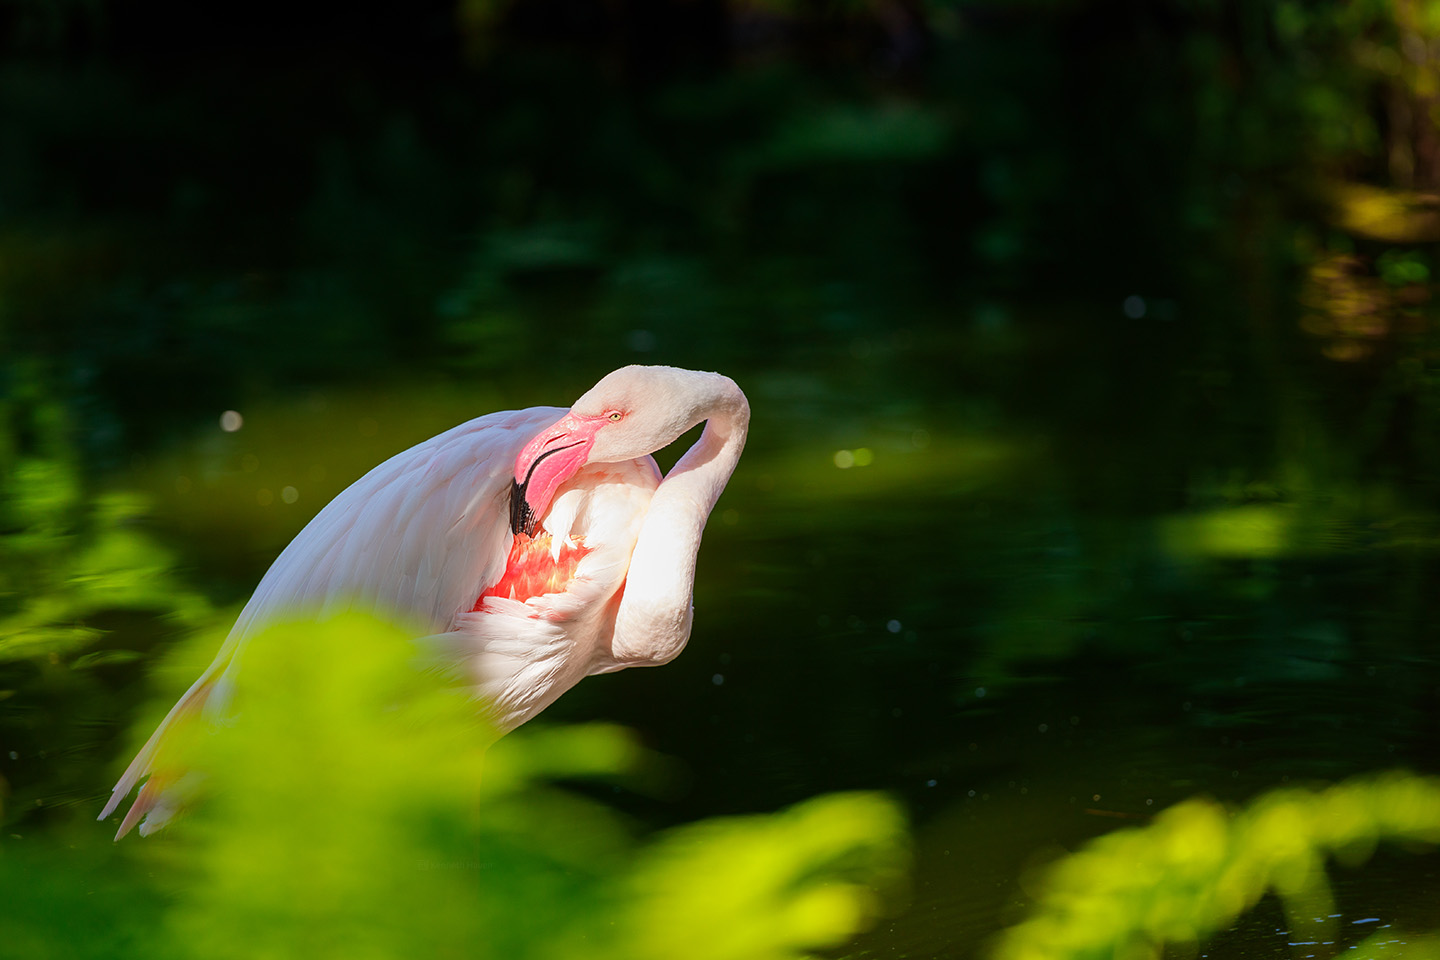 Flamingoene i Dyreparken i Kristiansand utgjør en fortryllende og fargerik attraksjon som tiltrekker seg besøkende i alle aldre. Med sine slående nyanser av rosa og rødt skiller de seg ut som levende juveler i parkens naturlige omgivelser.